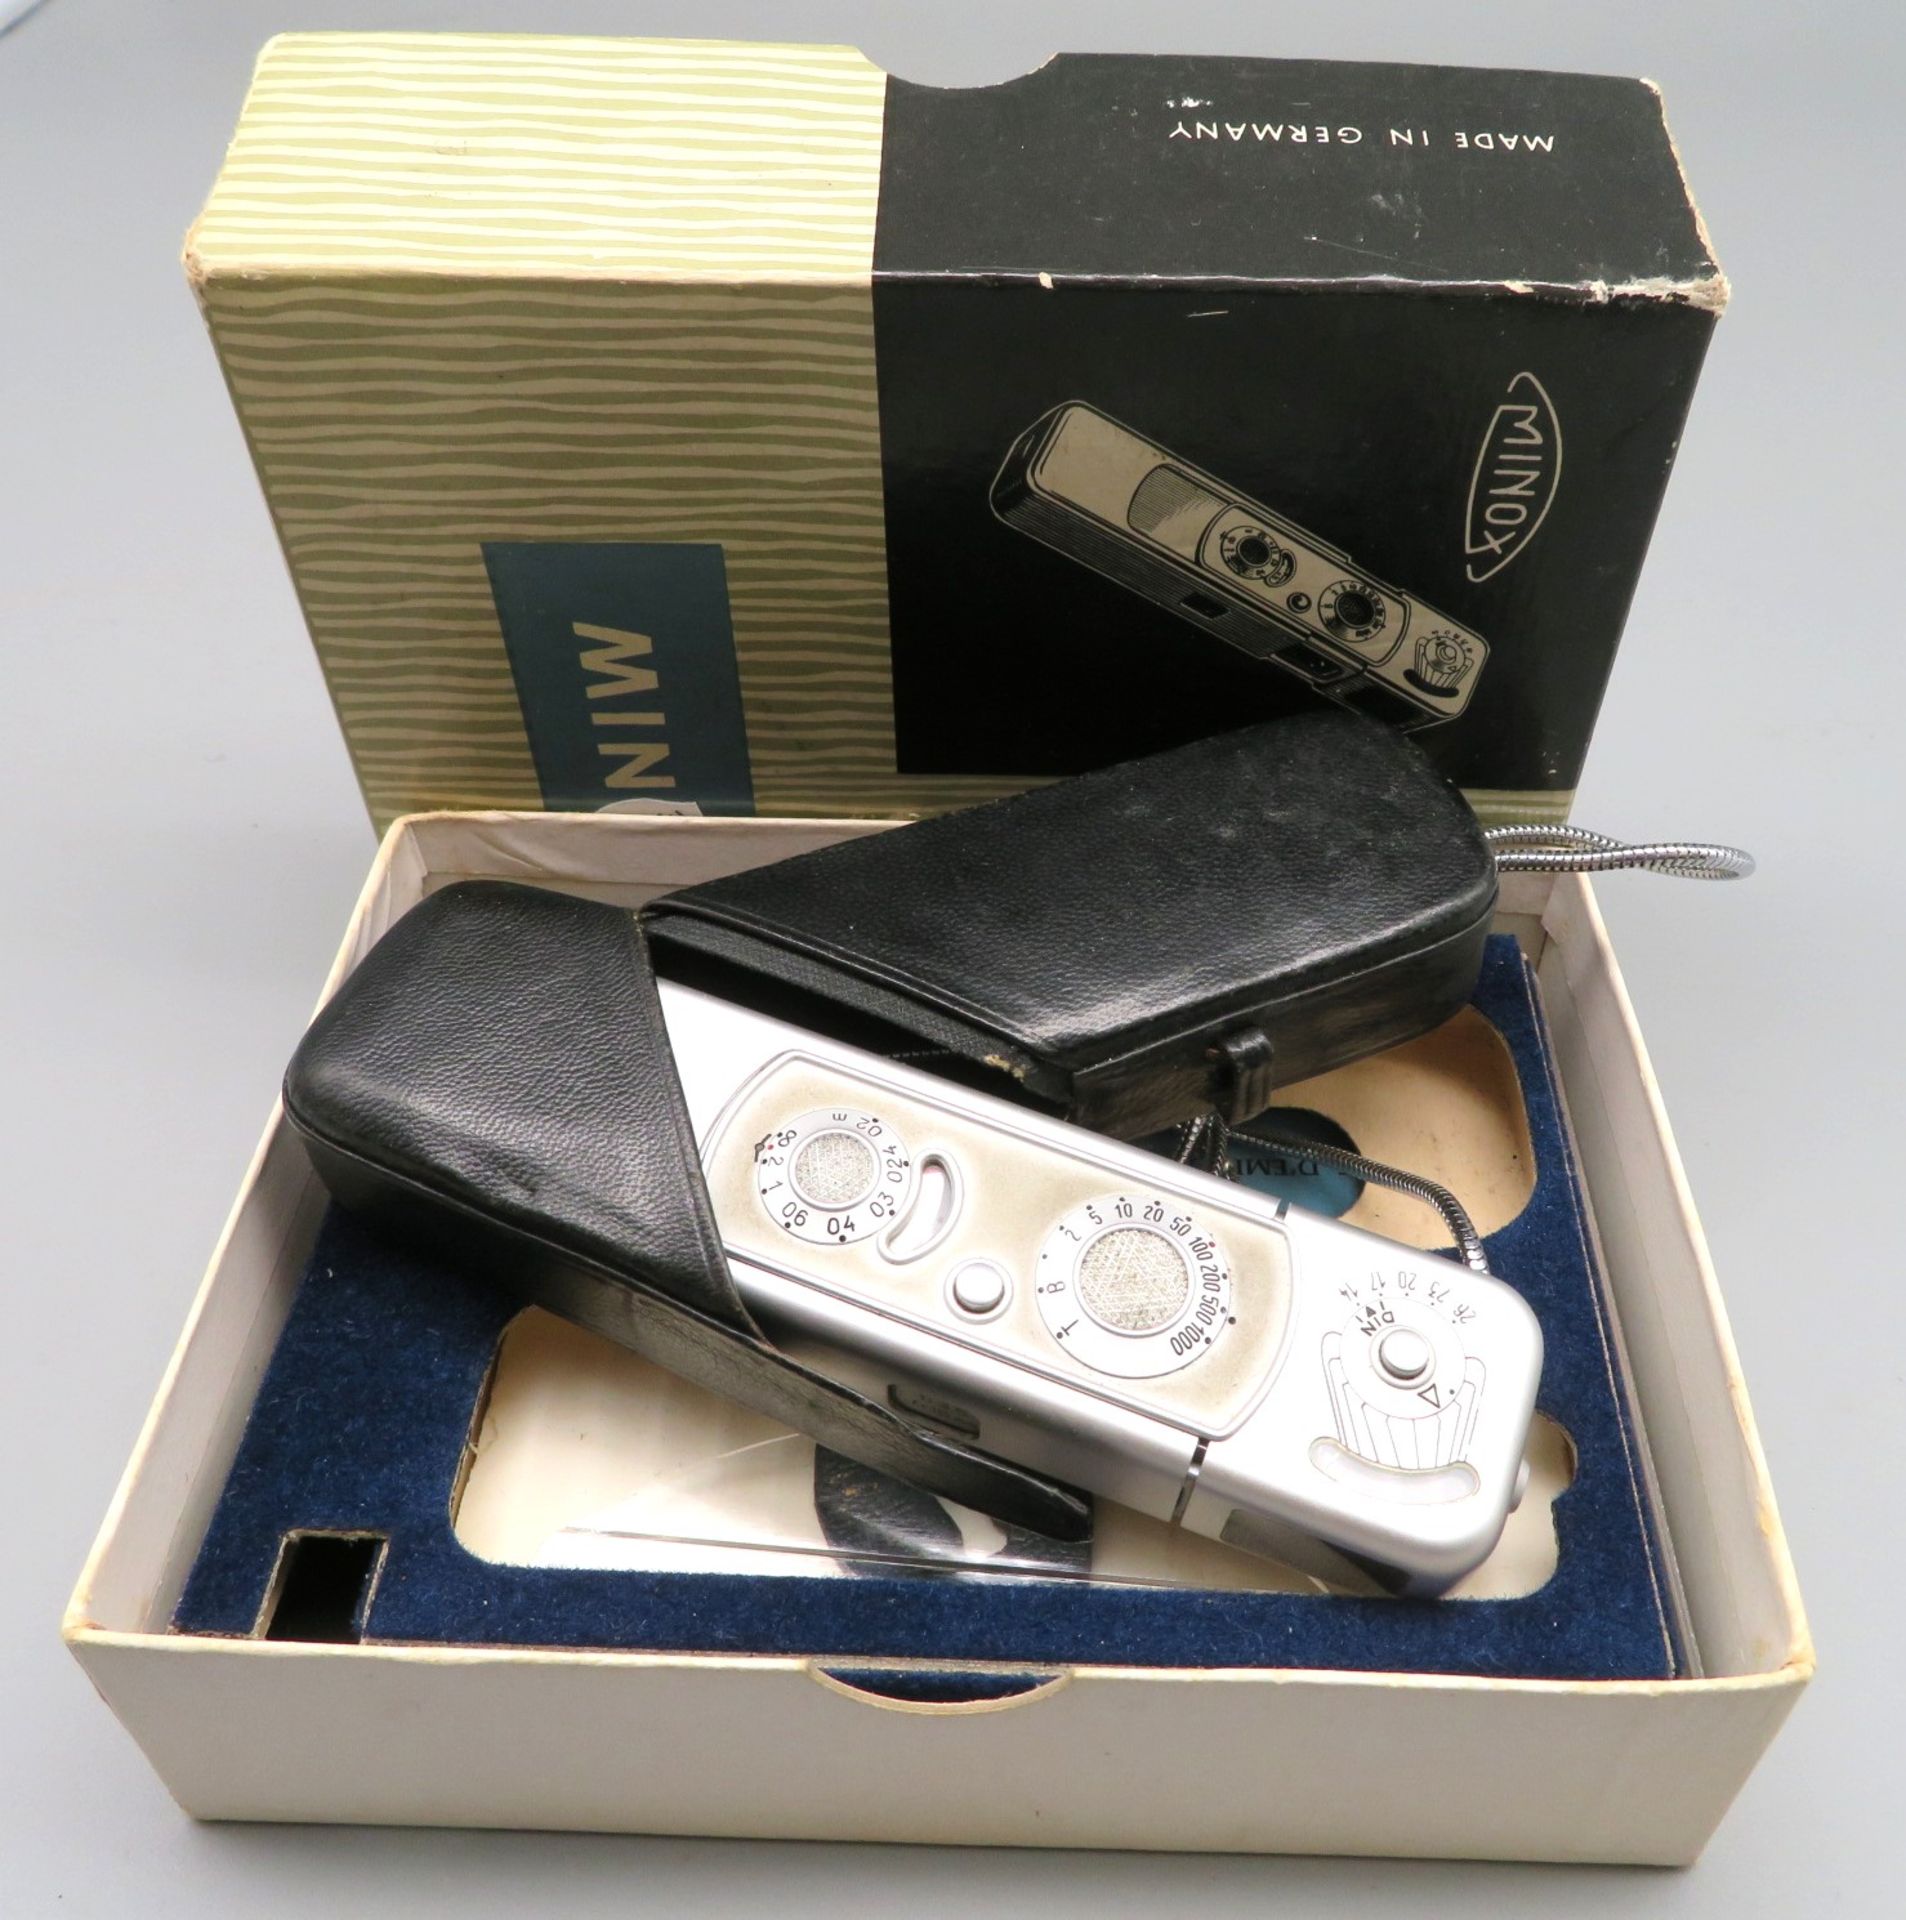 Spionage-Kamera, Minox B, Originalverpackung und Gebrauchsanweisung, Lederfutteral, l 11 cm.